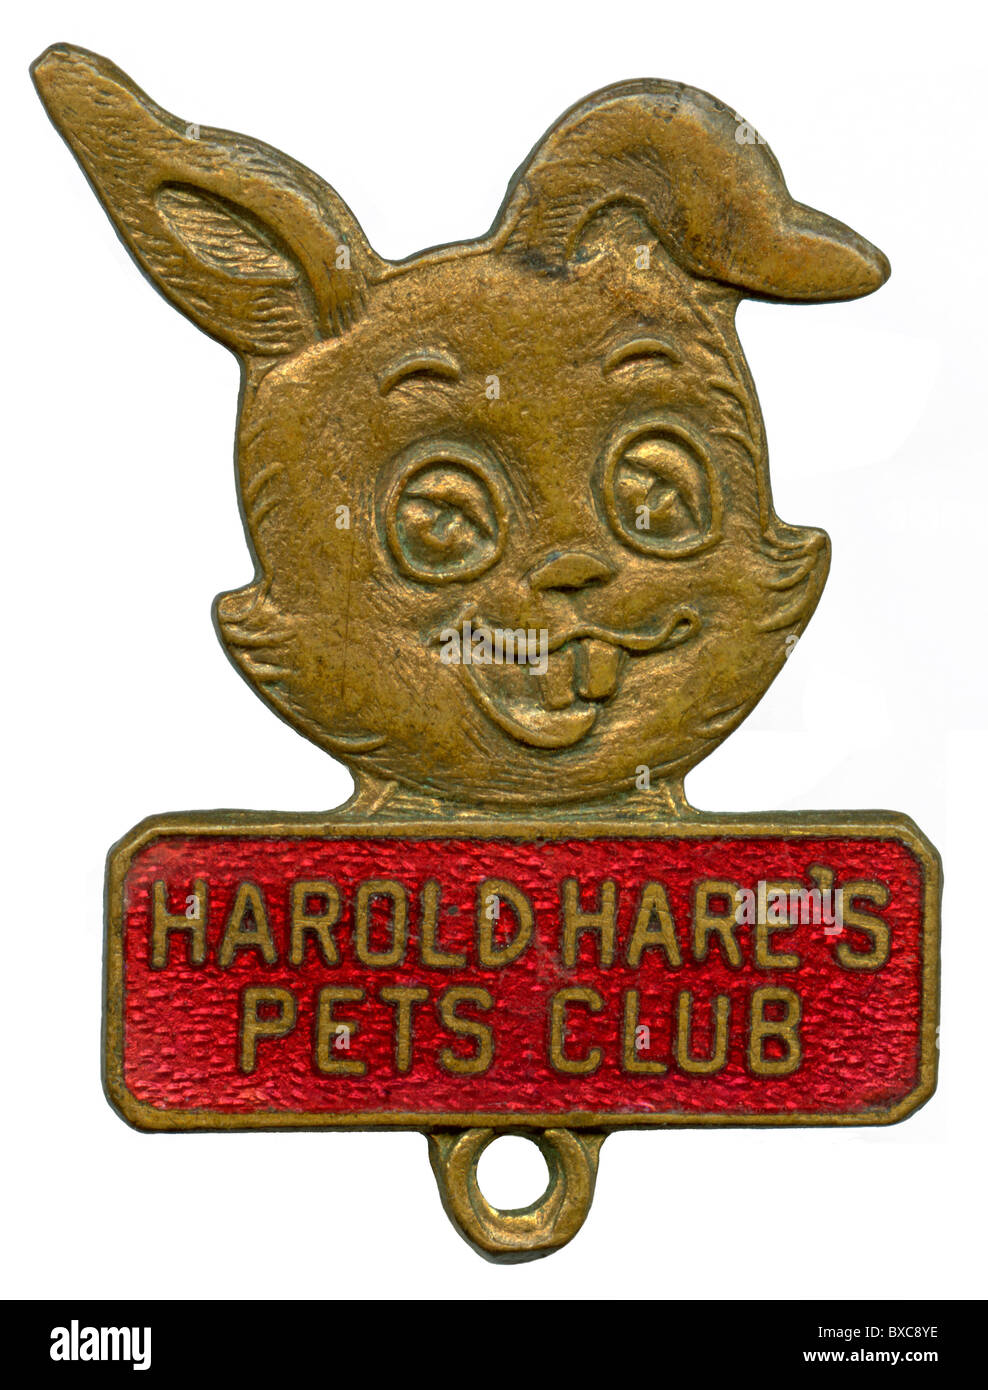 Harold lepre è di animali domestici Club badge di smalto c. 1955 Foto Stock